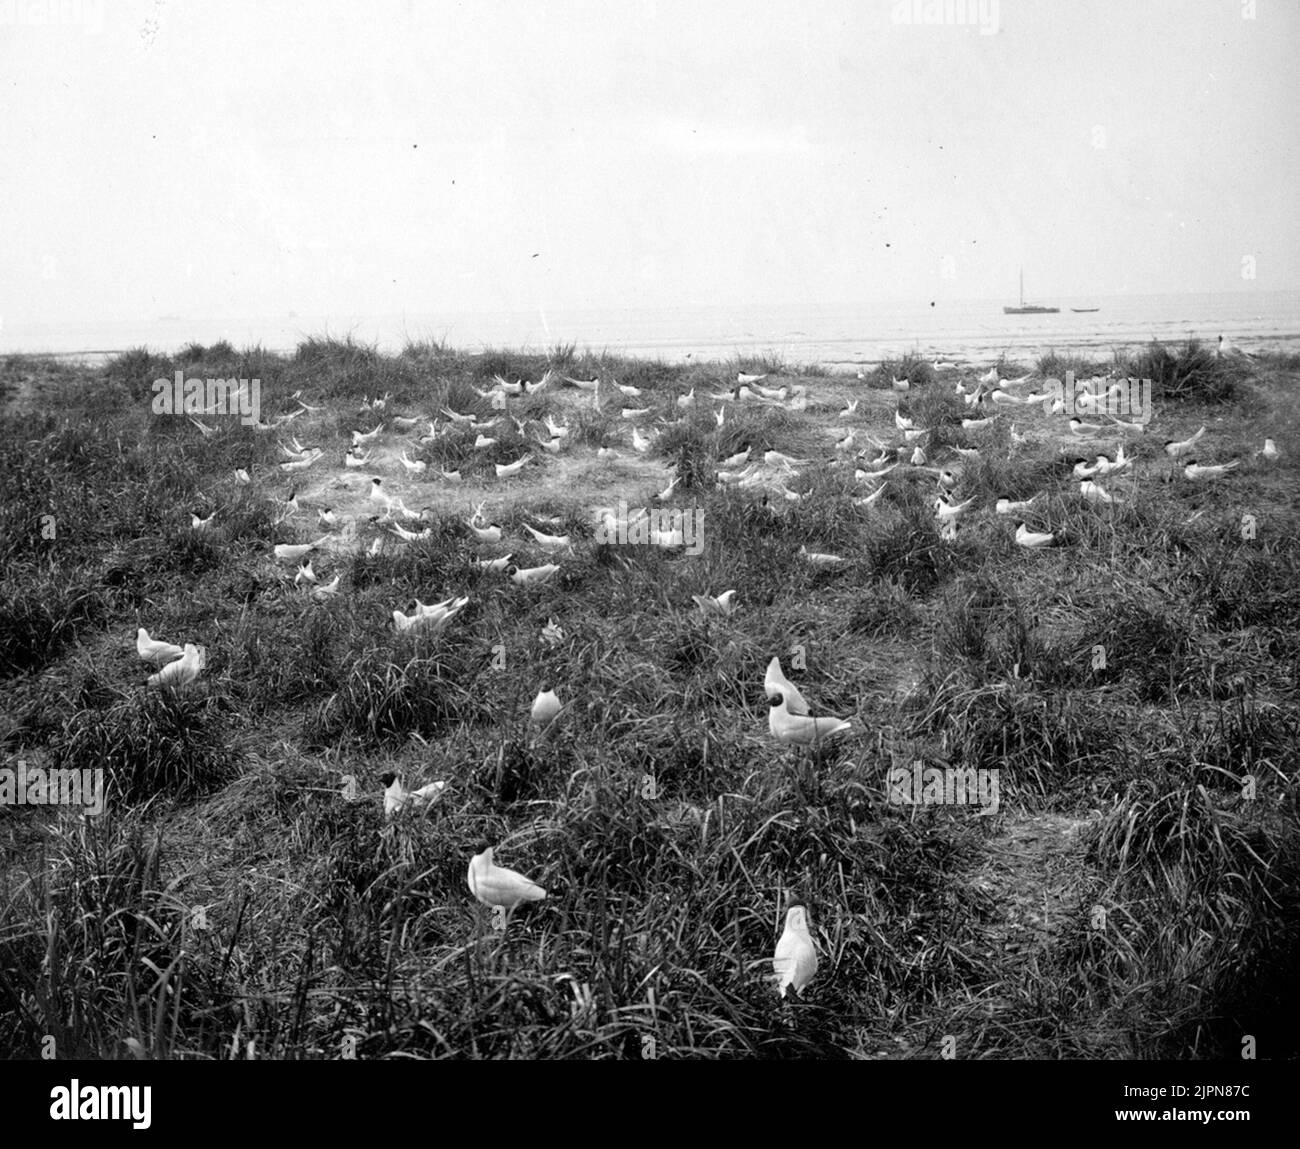 Kentska Ternor, Sterna Cantiaca, Colony, Gulls in the foreground, 24/5 1926 Kentska tärnor, Sterna cantiaca, kolonien, skrattmåsar i förgrunden, 24/5 1926 Stock Photo